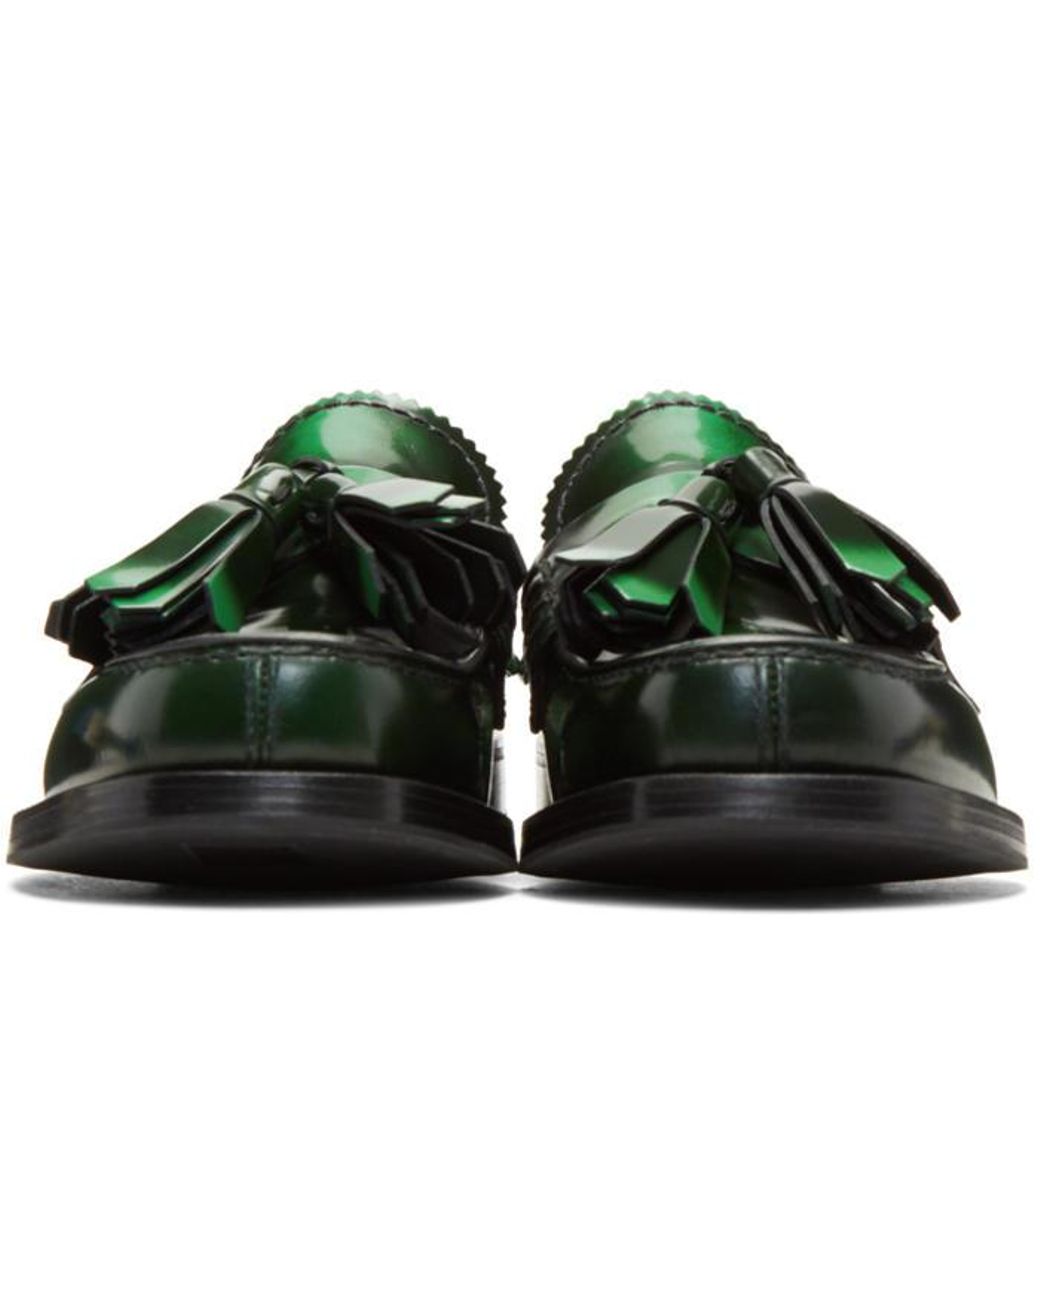 Prada Leather Green Tassel Loafers | Lyst Canada